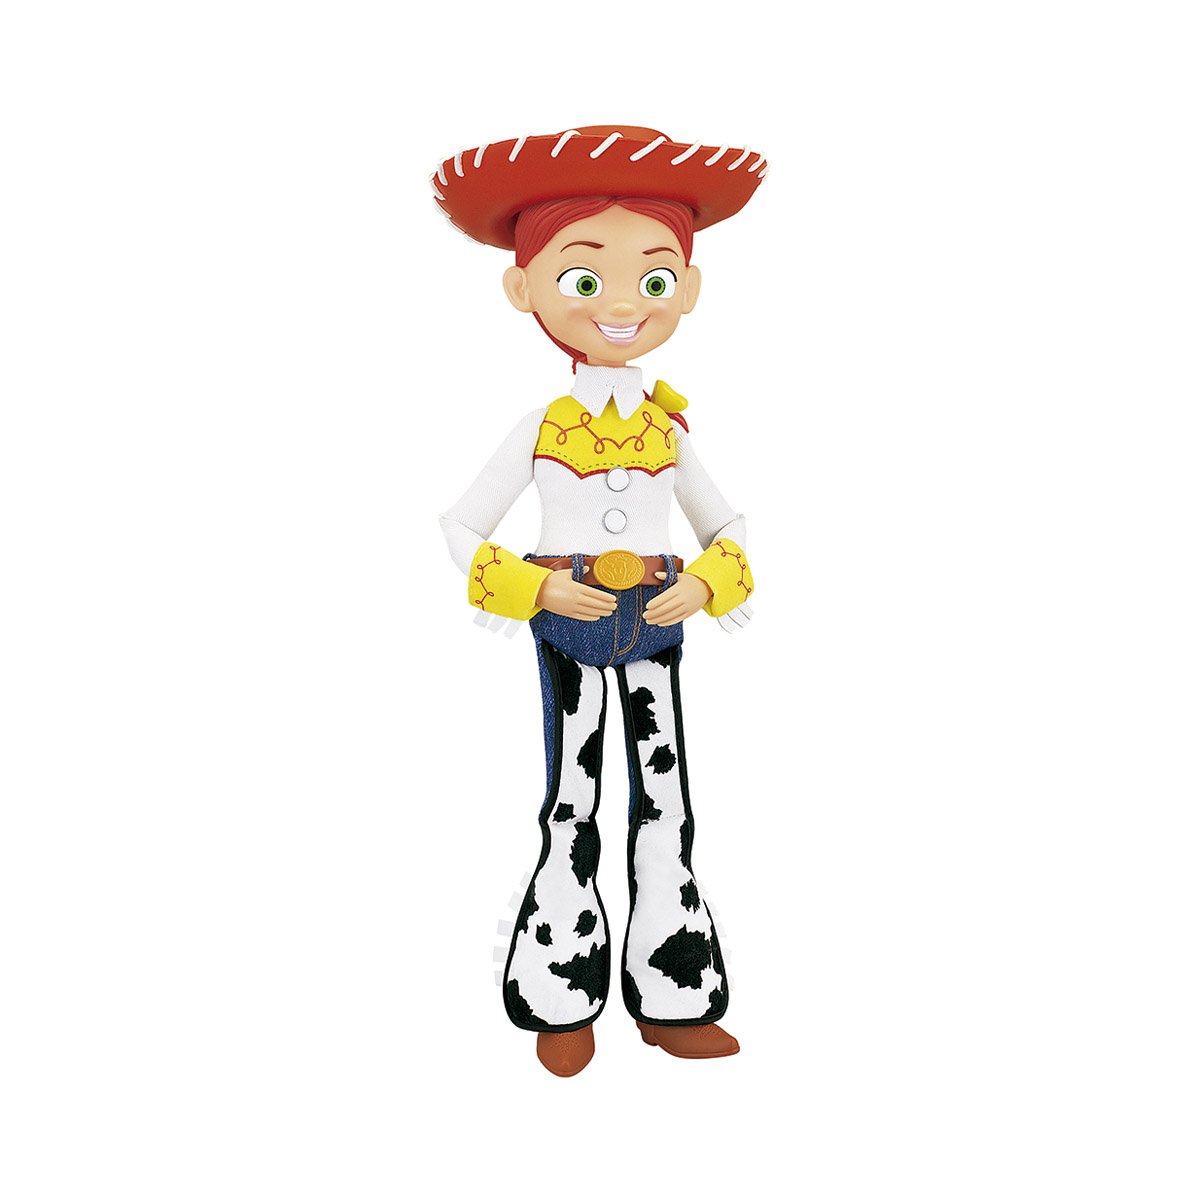 Jessie Parlante Toy Story 4 Toy Plus